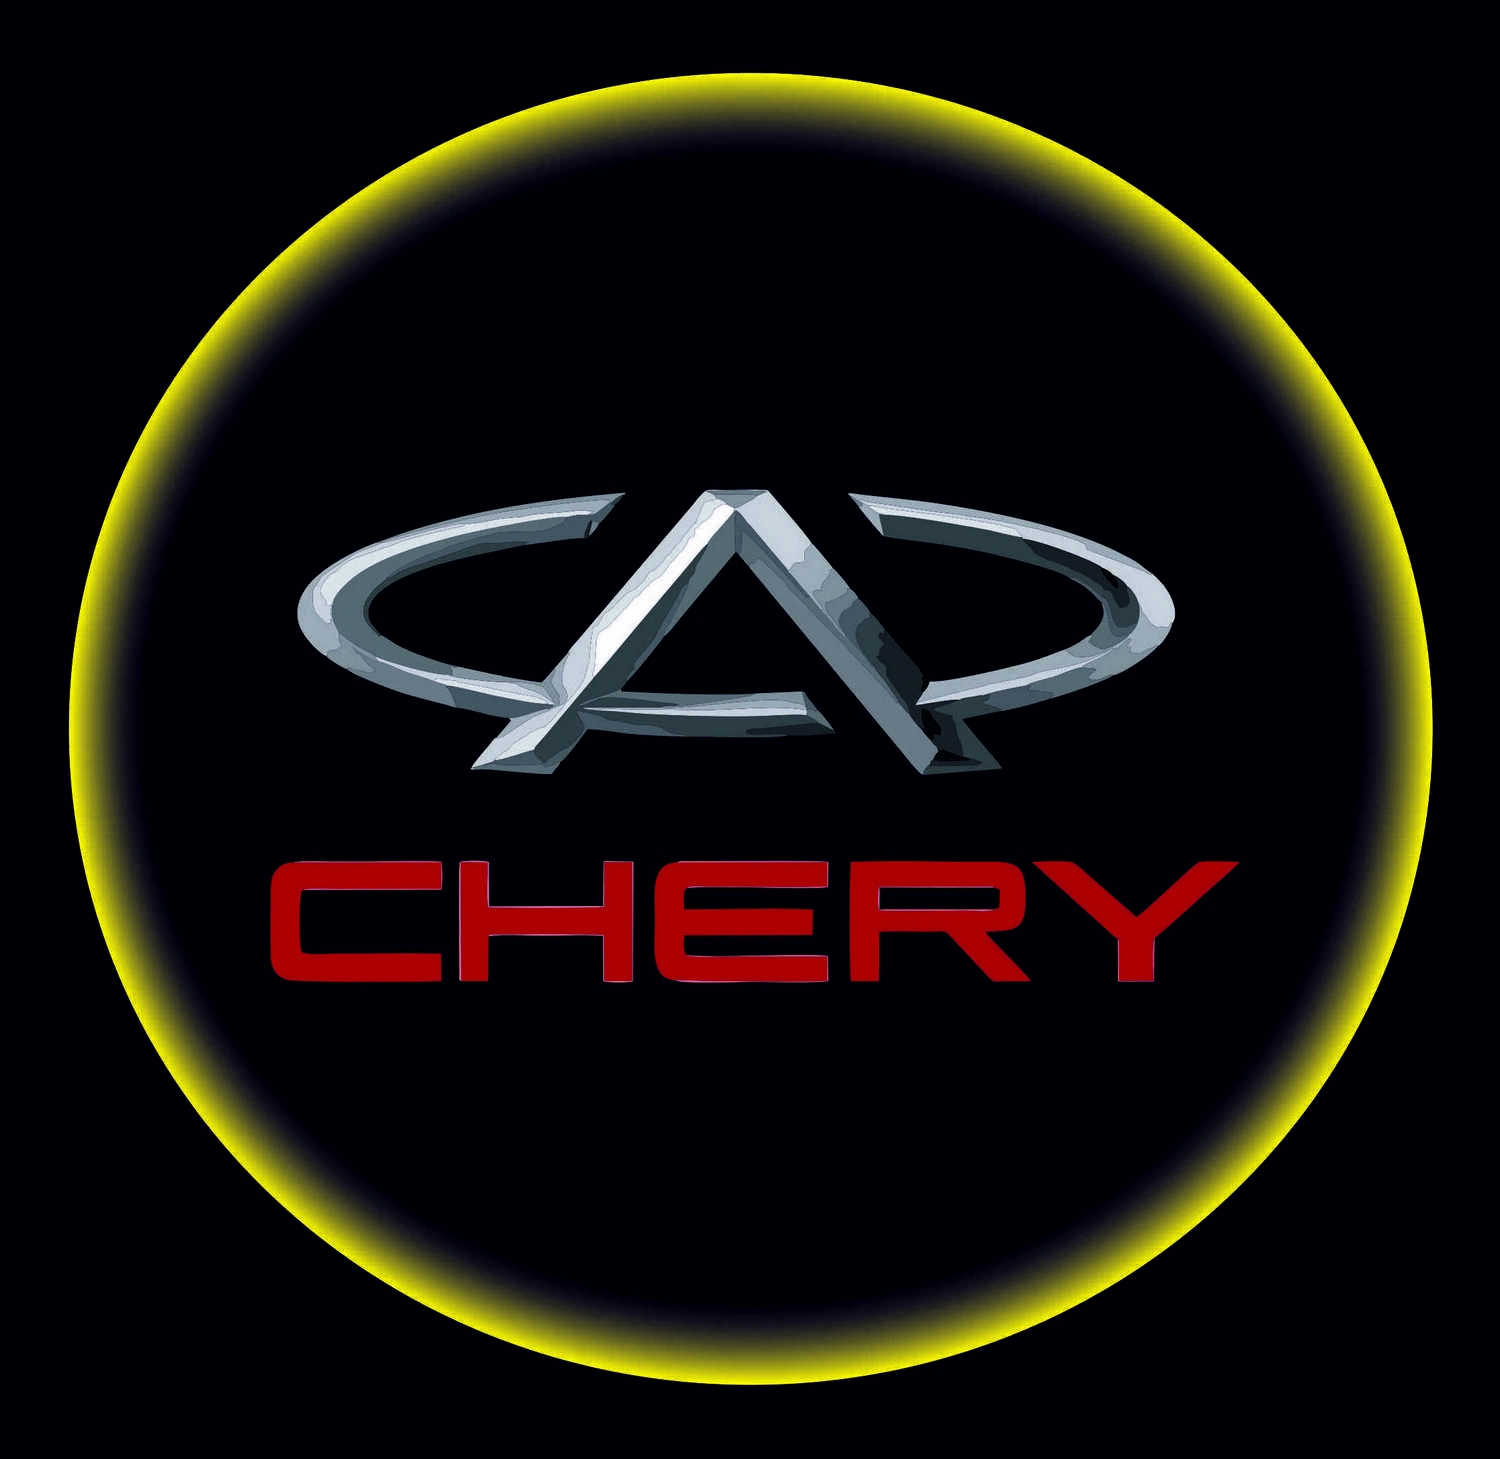 Проектор с логотипом Chery